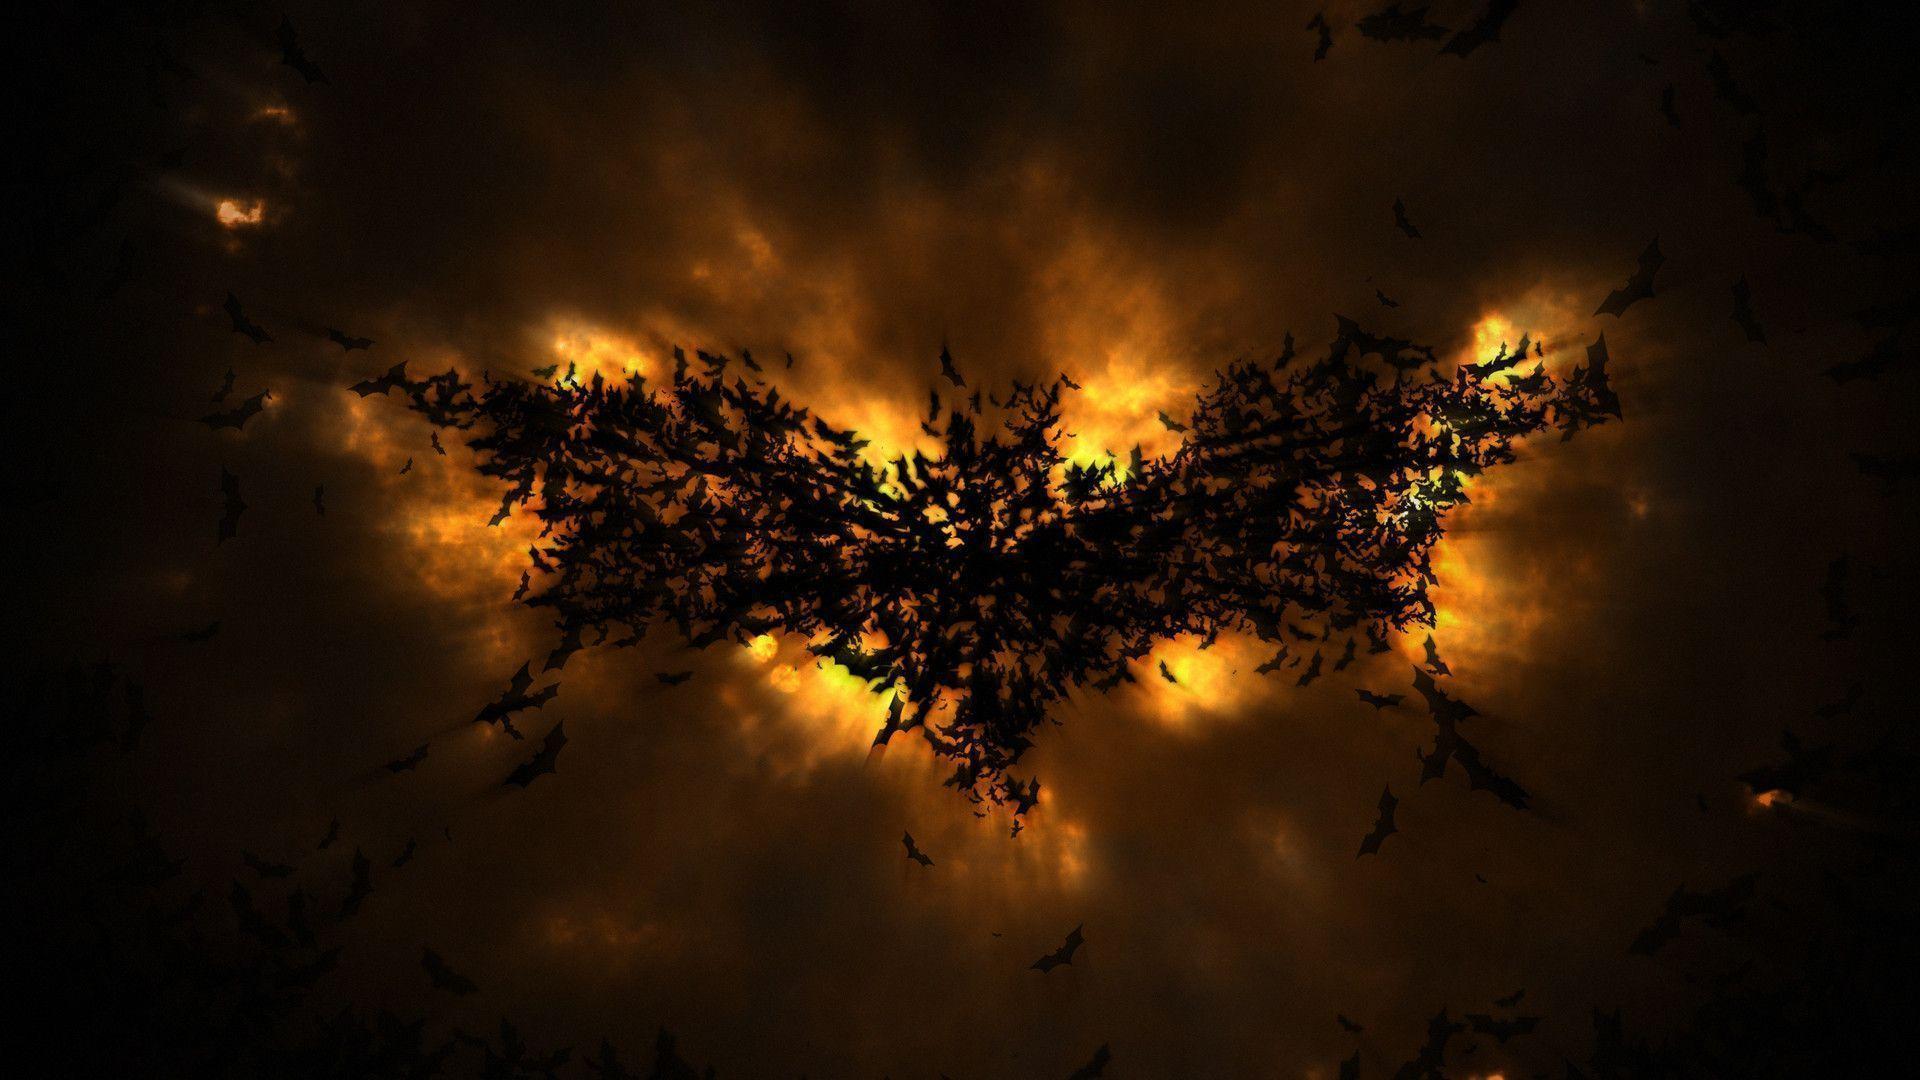 The Dark Knight Rises Wallpaper HD